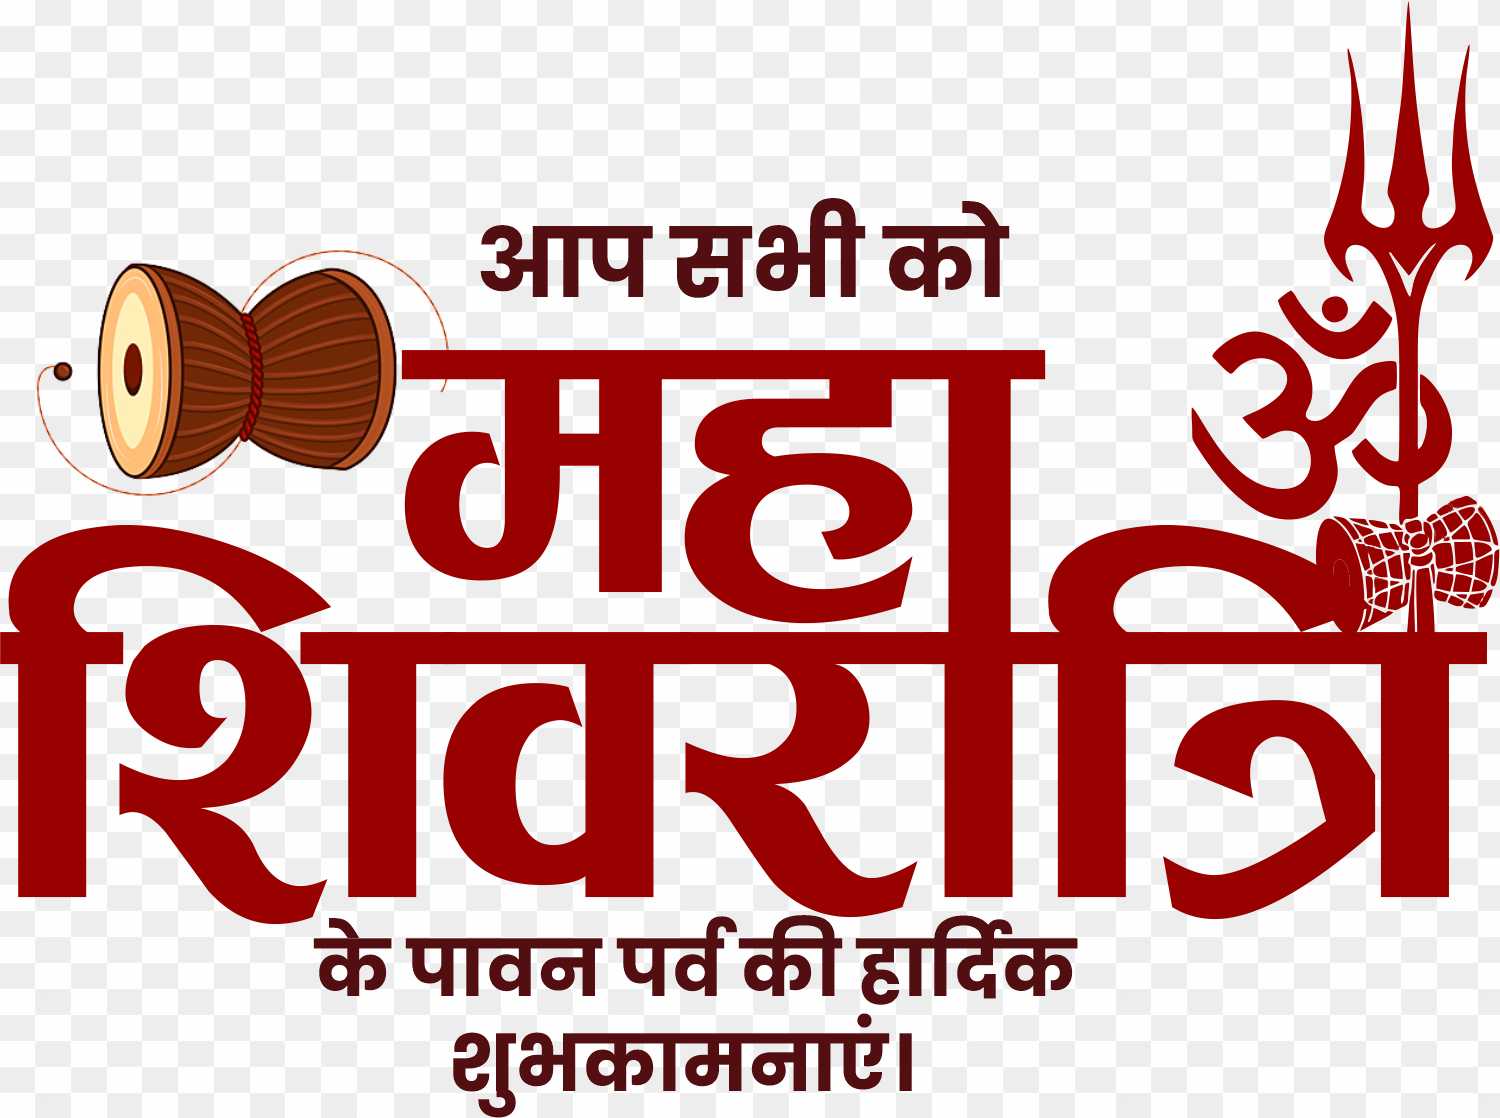 Happy Mahashivratri PNG in hindi text images